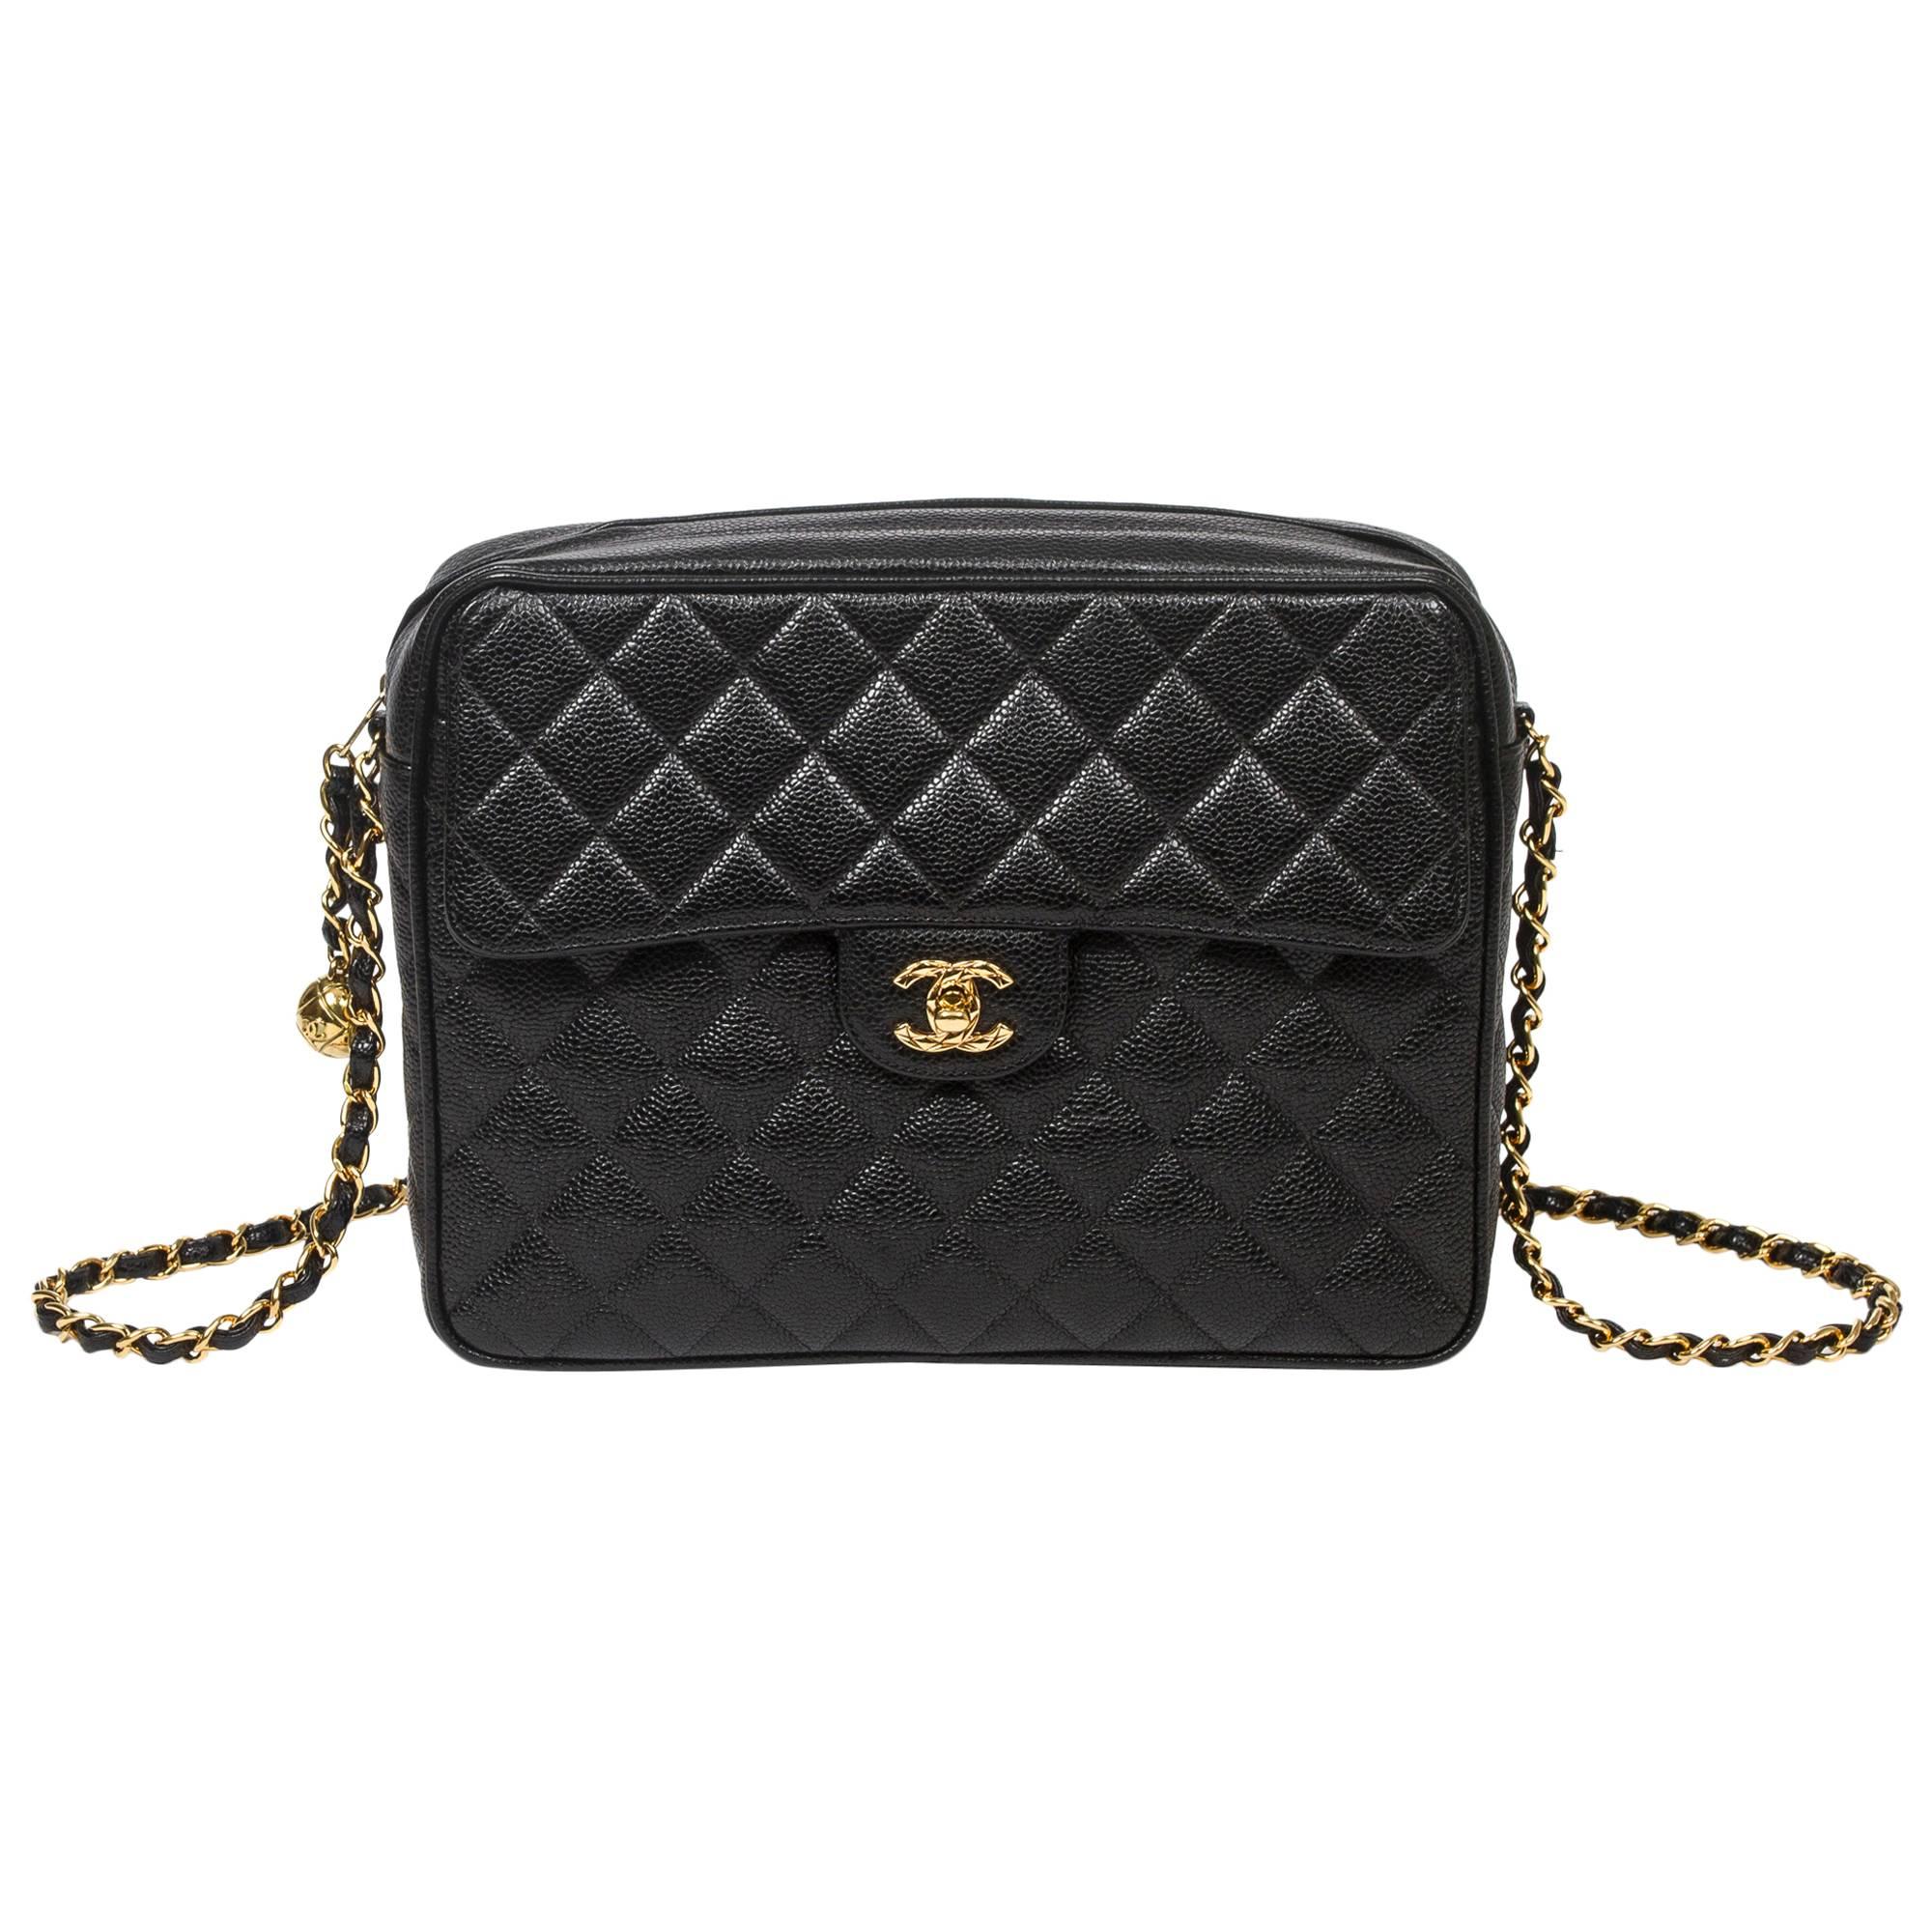 Chanel - Vintage Shoulder Bag Black Quilted Caviar